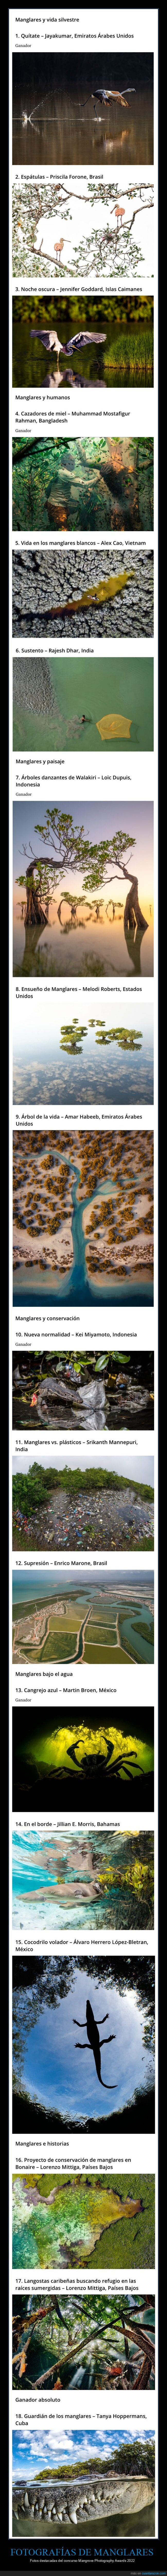 fotografía,manglares,concurso